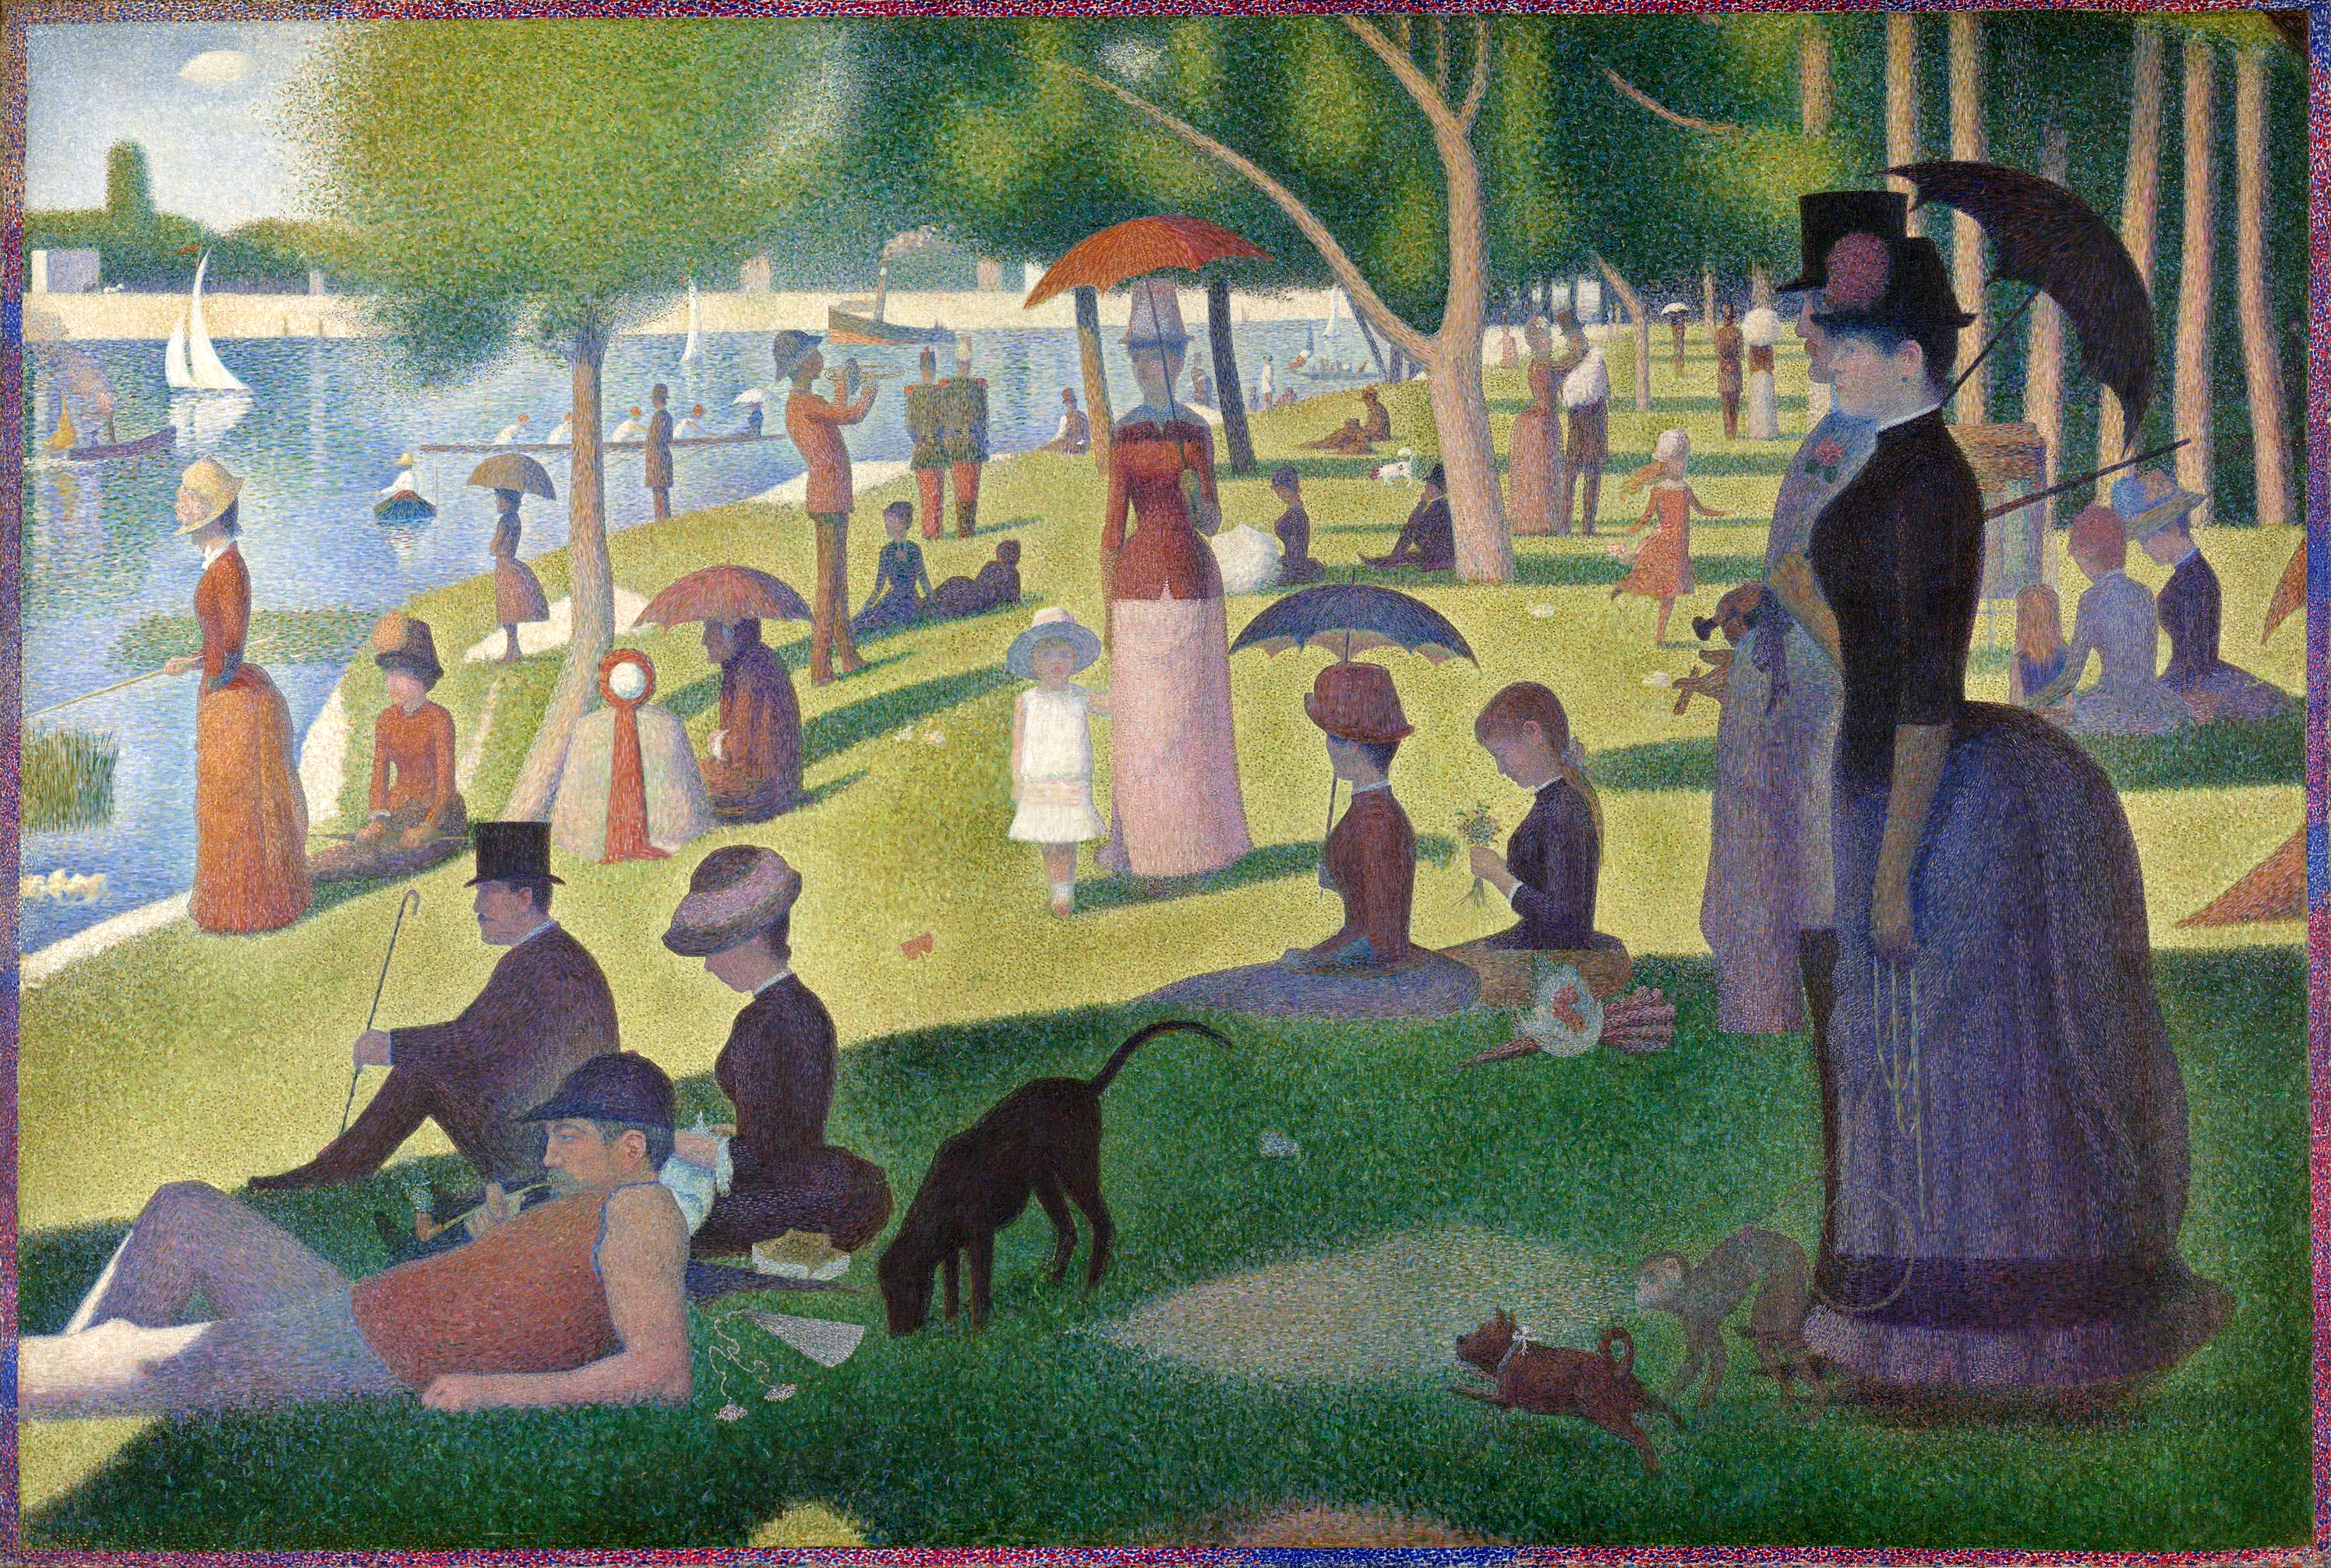 Una domenica pomeriggio sull'isola della Grande Jatte by Georges Seurat - c. 1884-1886 - 207,5 x 208 cm Art Institute of Chicago